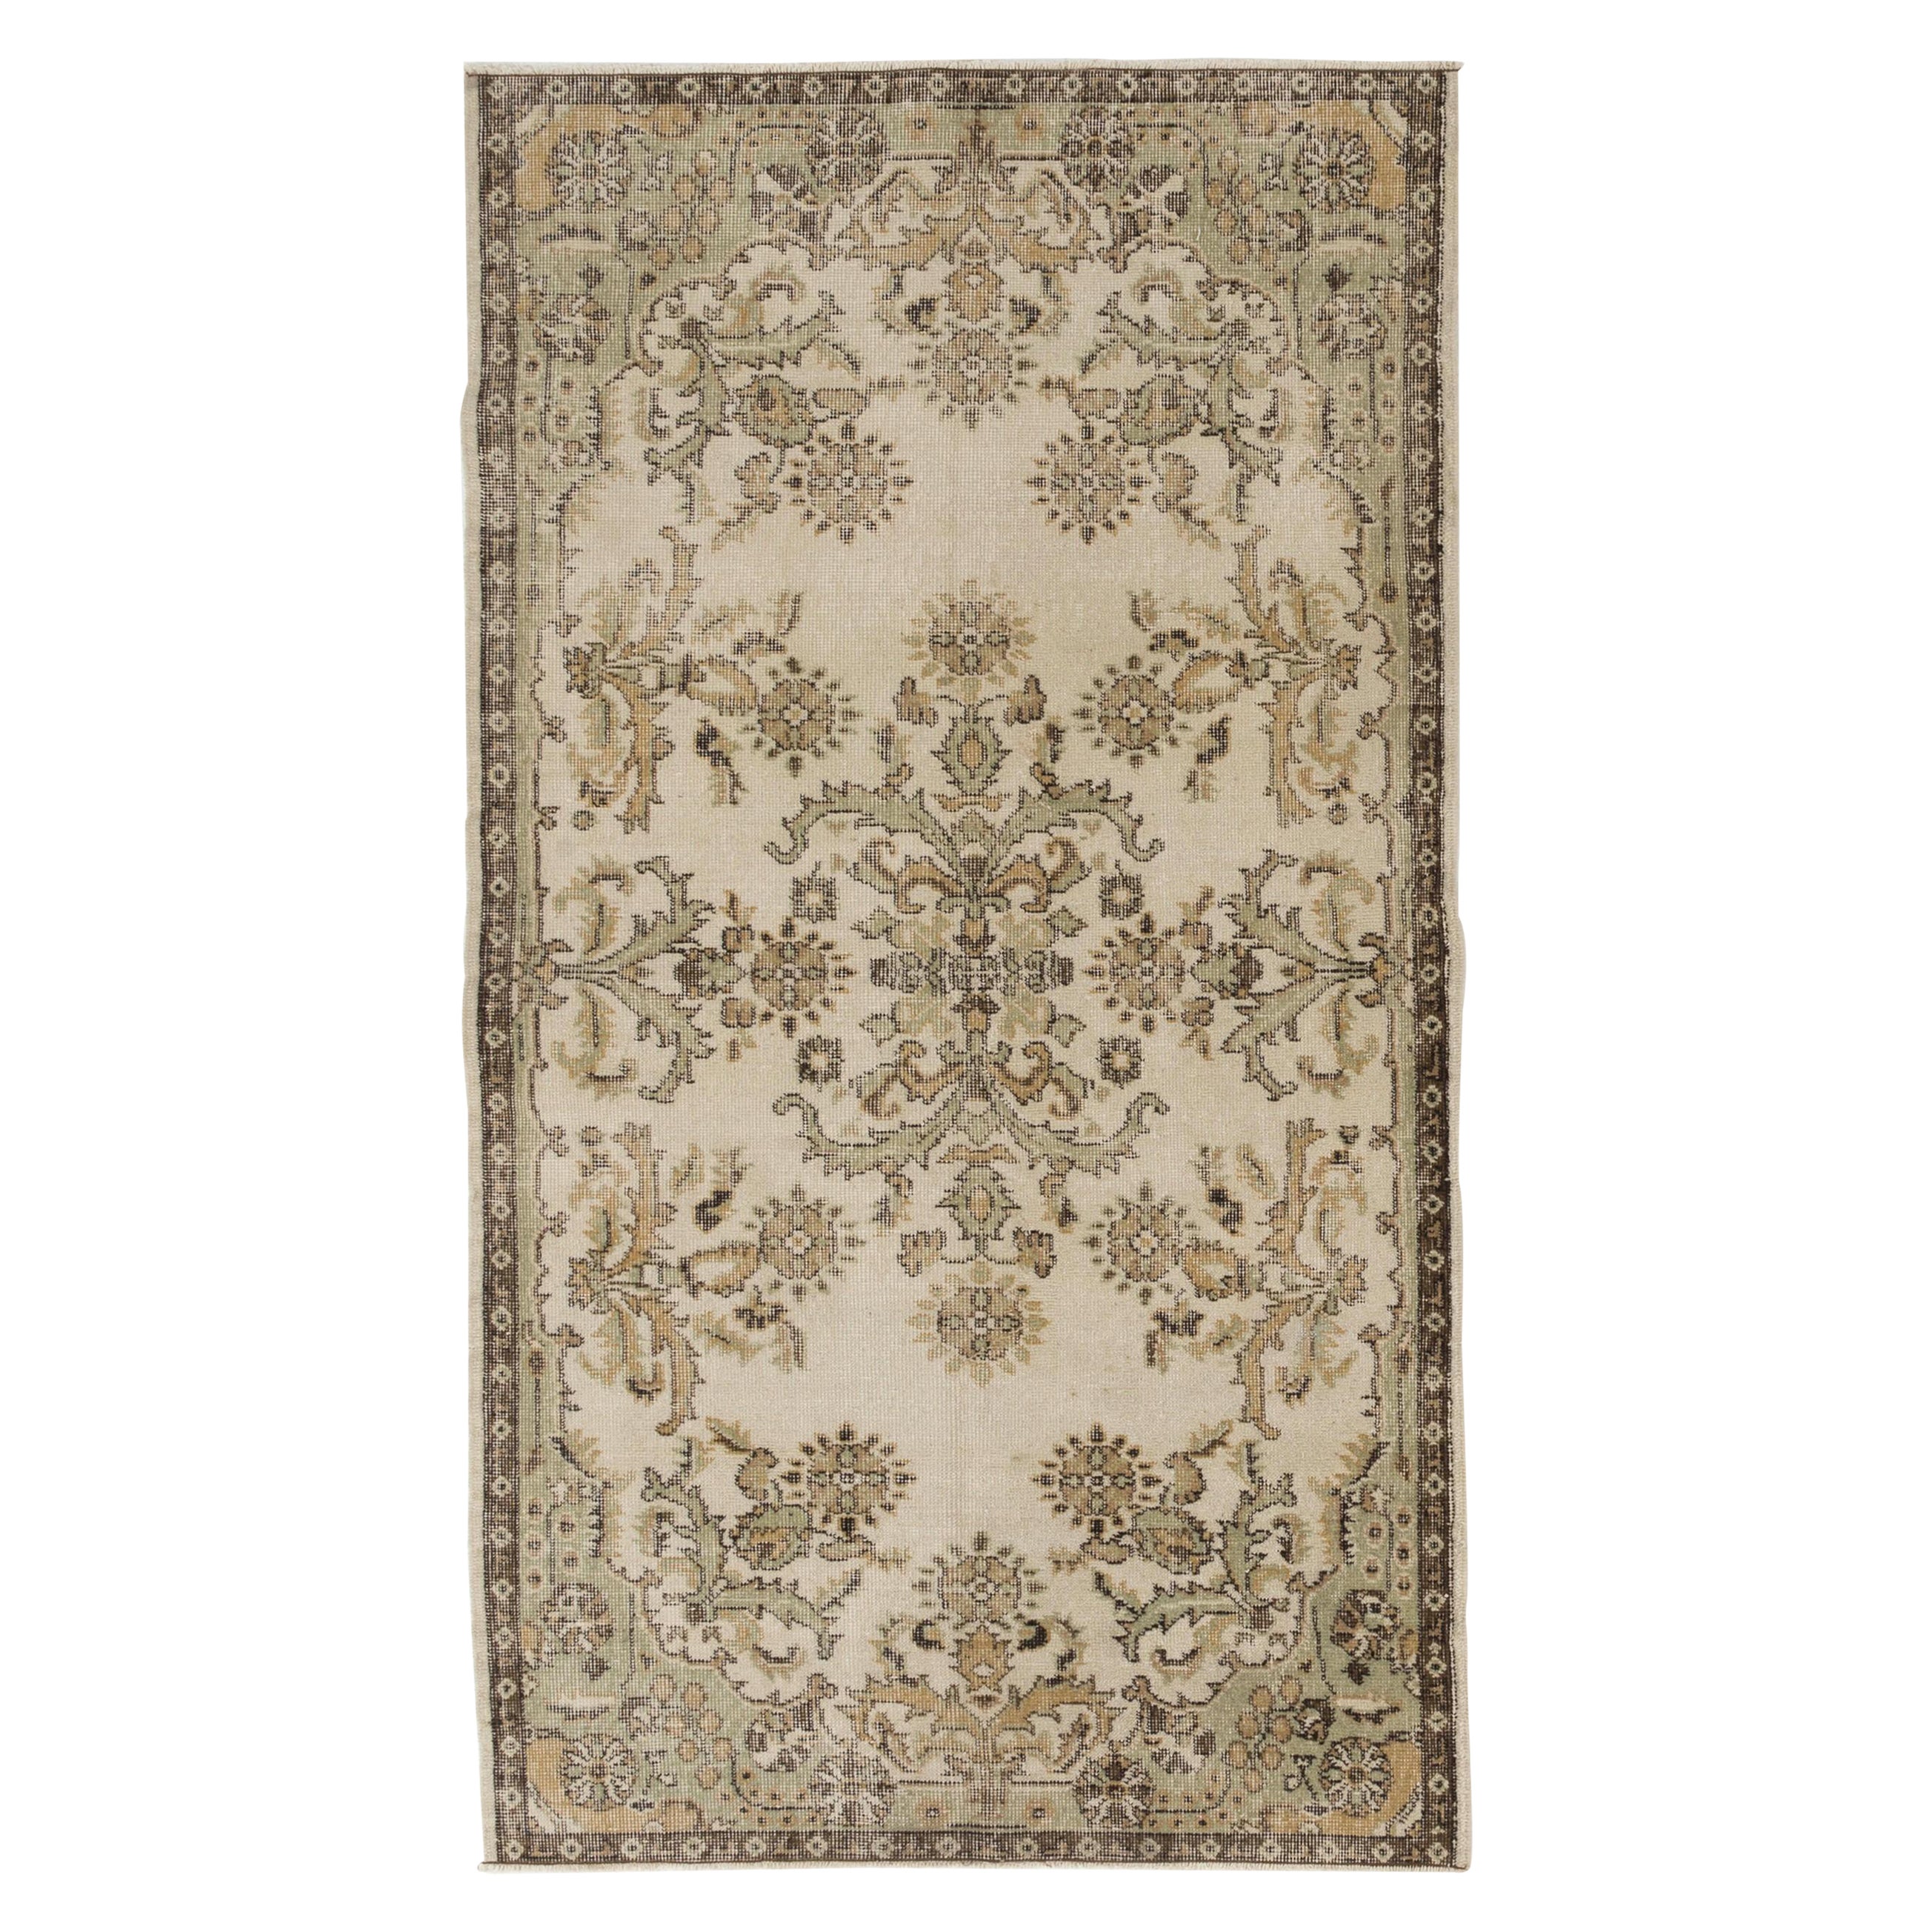 4x7 Ft Vintage Rug depicting French Floral Garden Design.  Beige Handmade Carpet